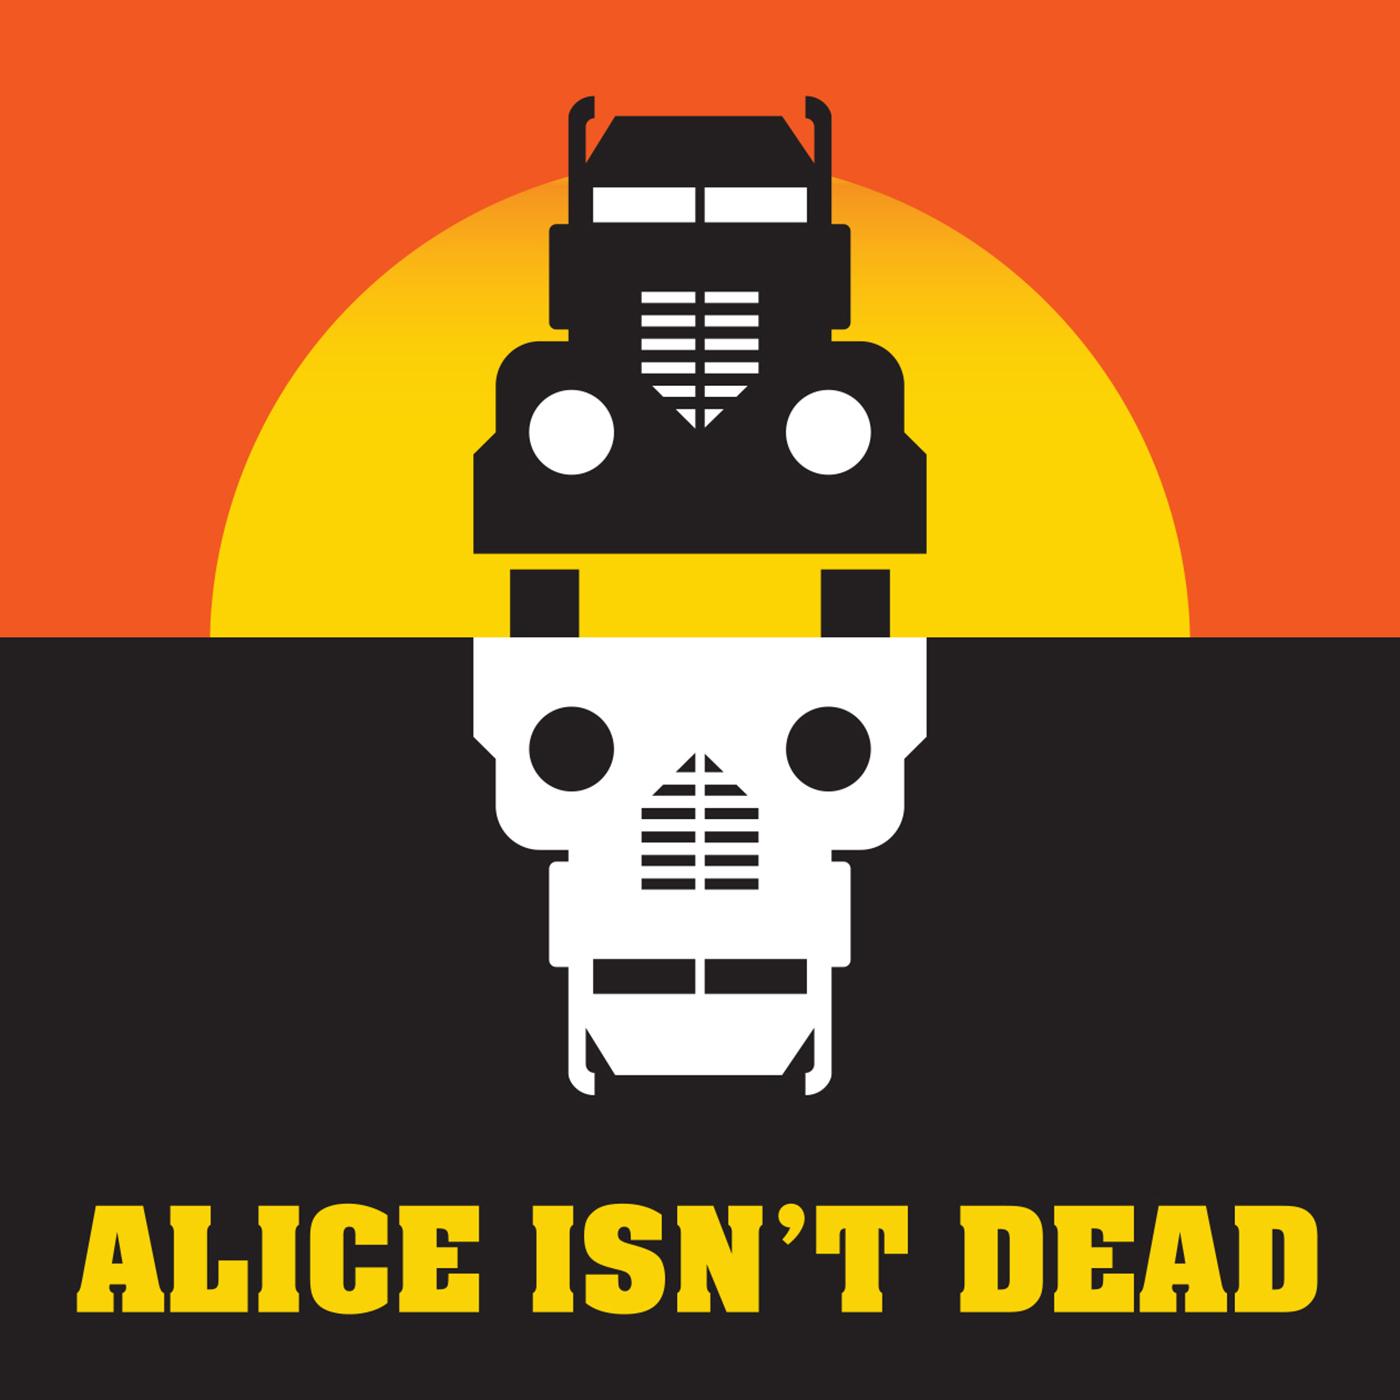 Thumbnail for "Alice Isn't Dead Novel Excerpt 2".